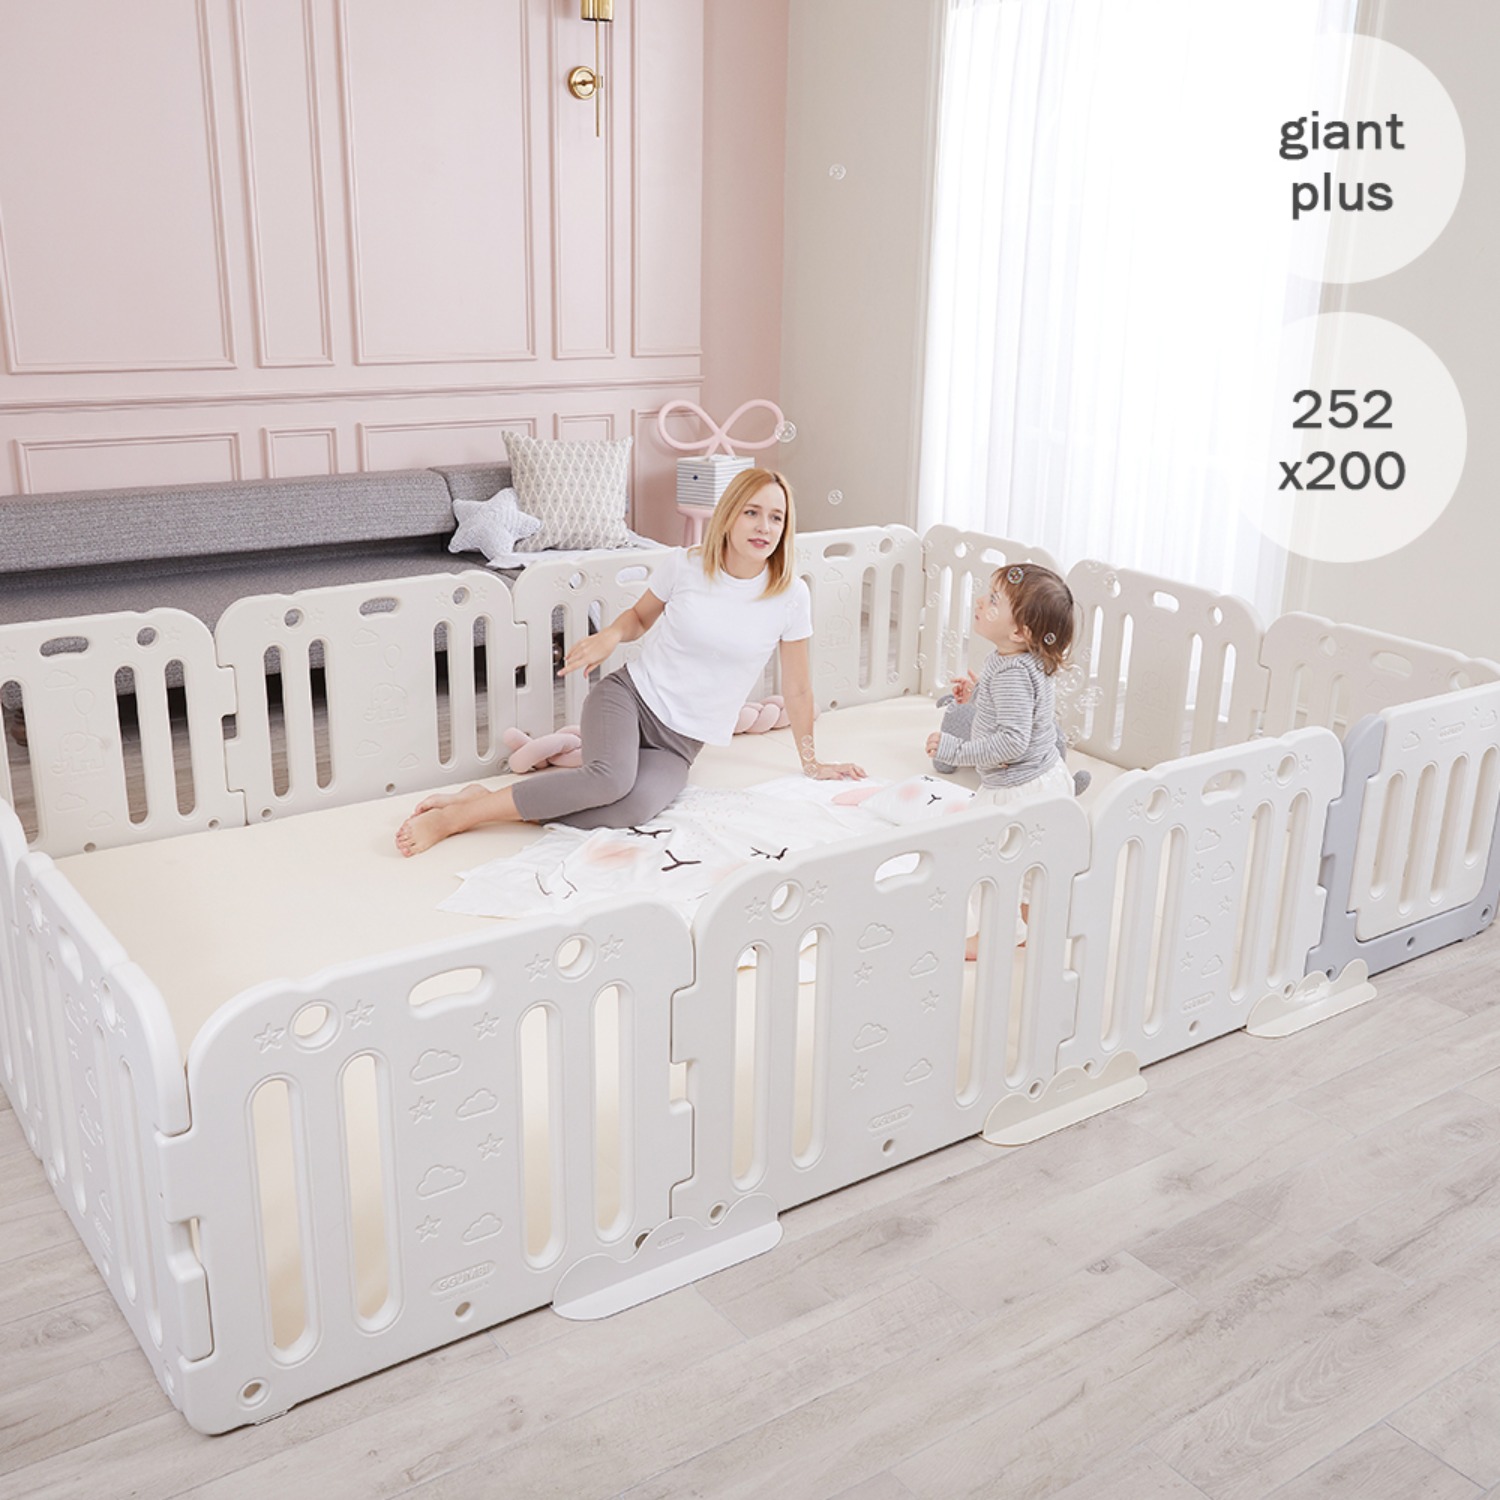 giant plus baby room set 252 x 200